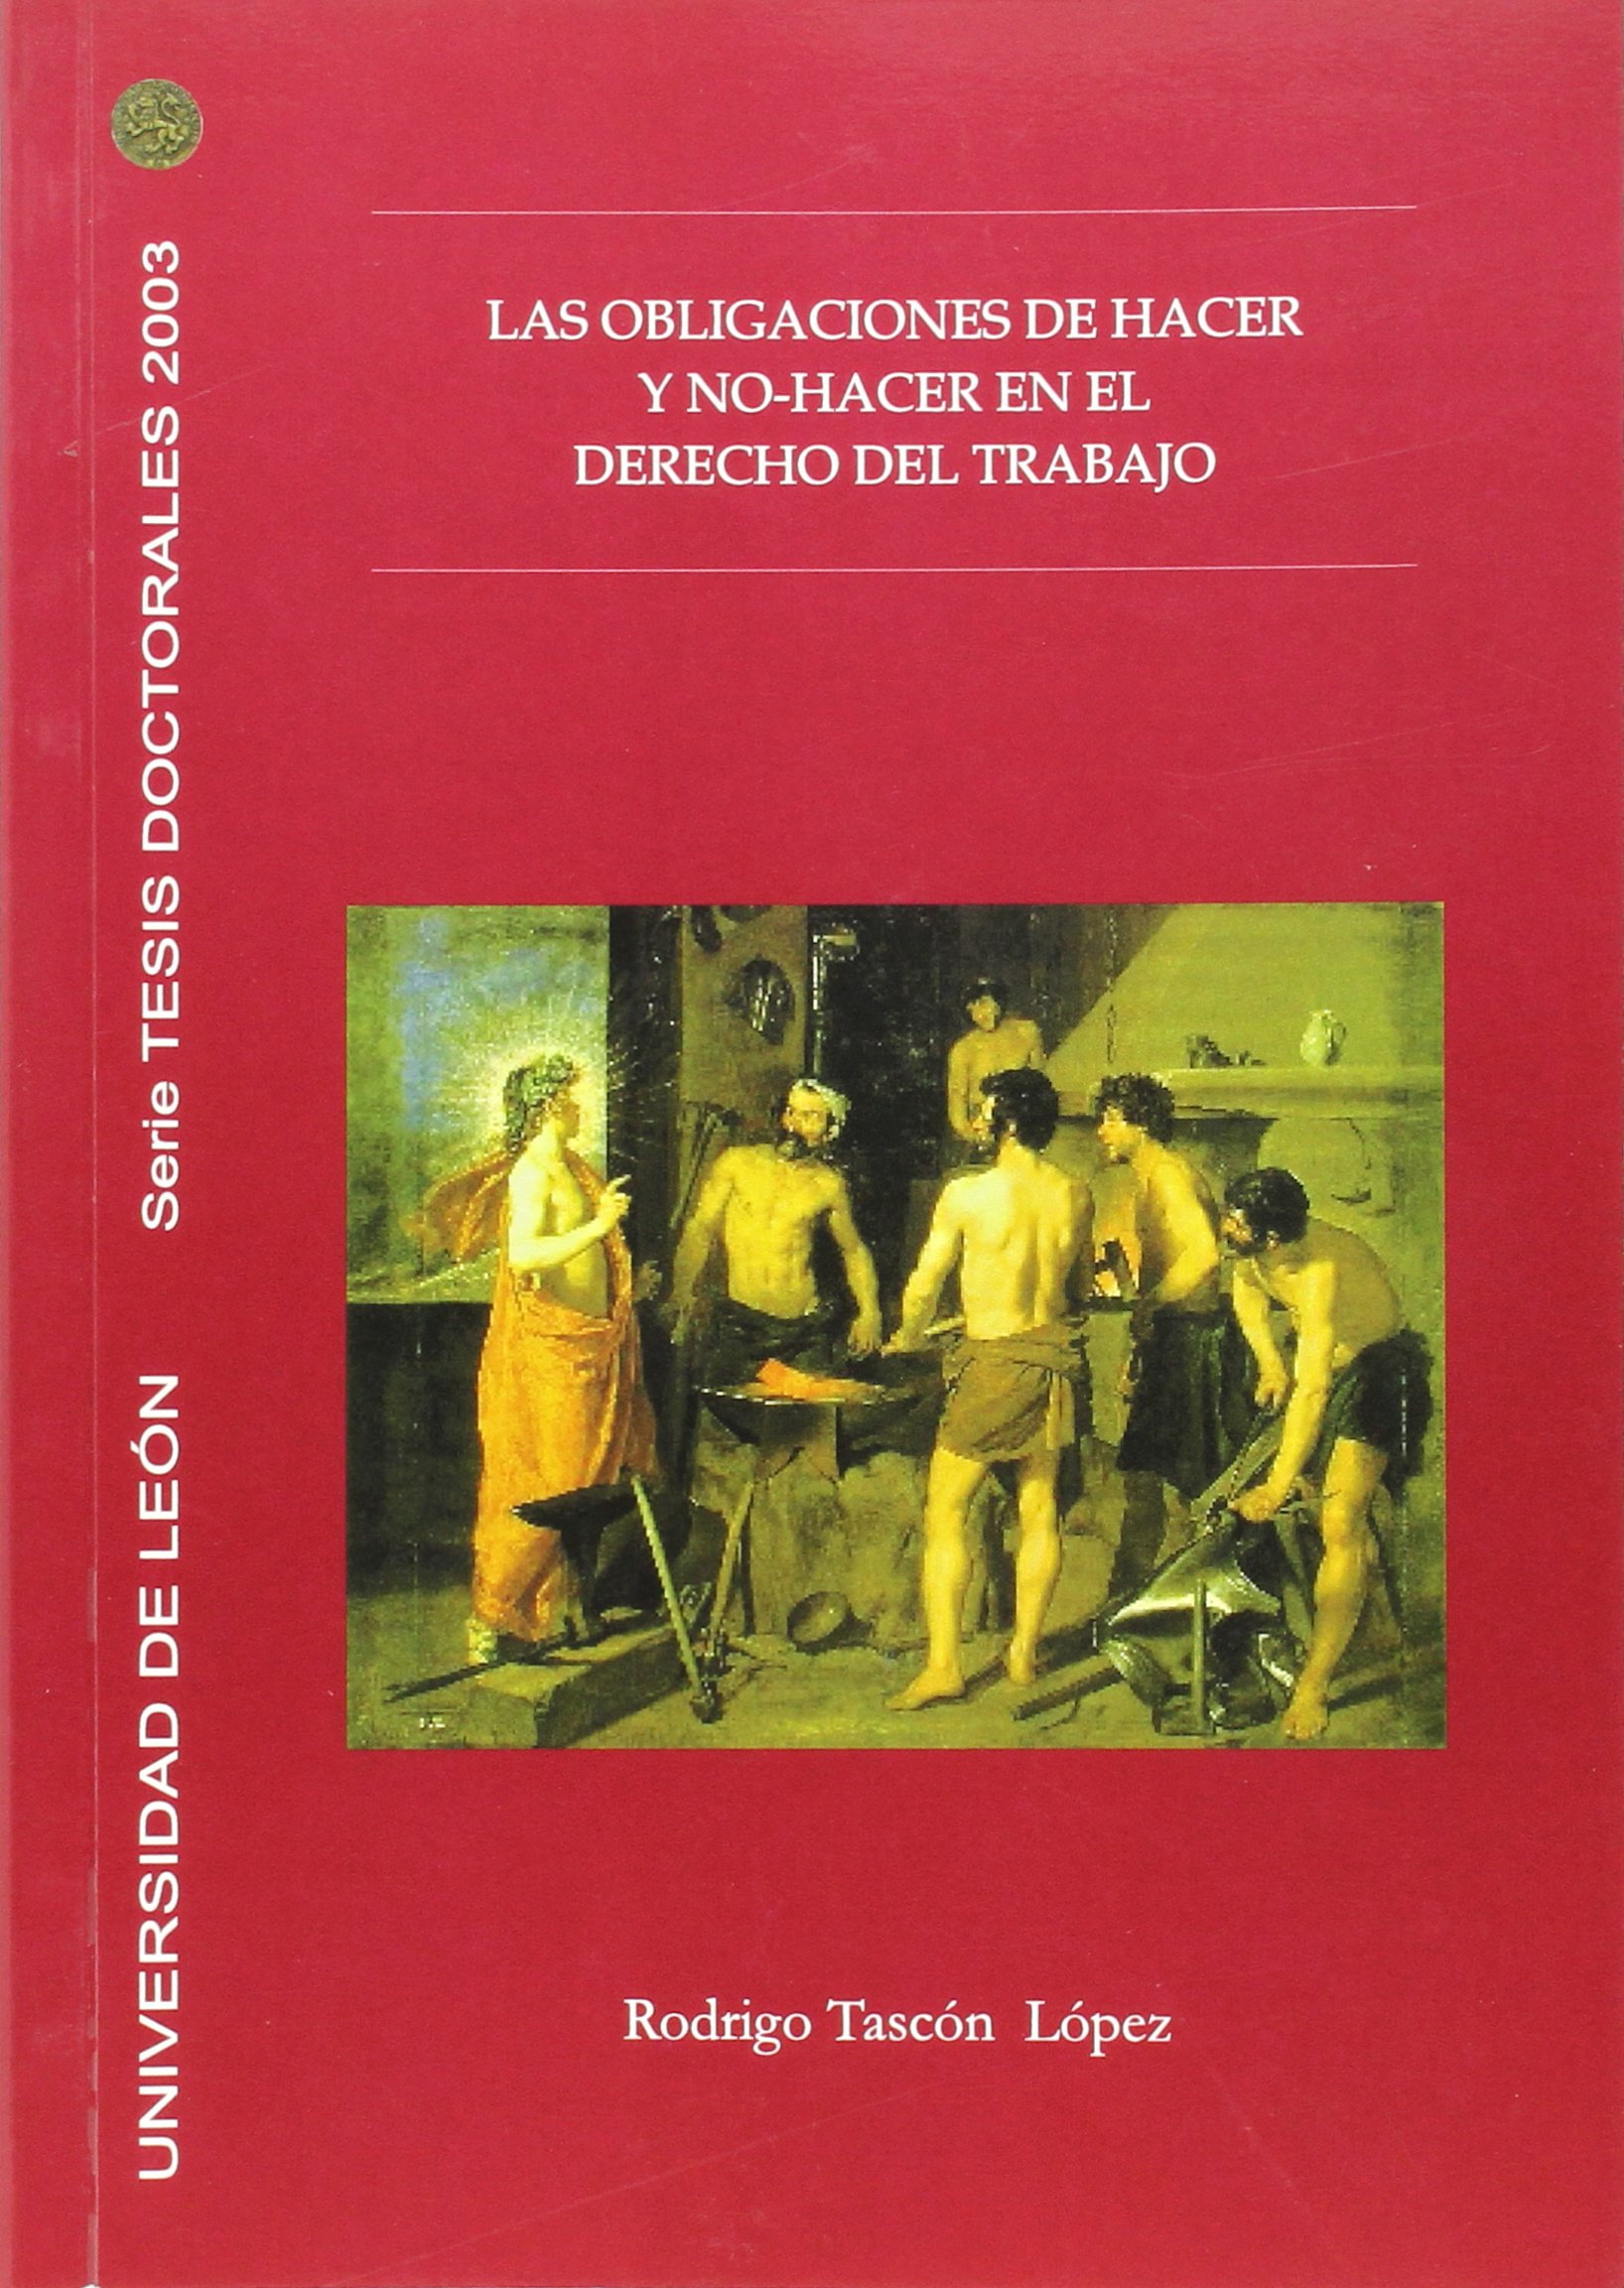 Imagen de portada del libro Las obligaciones de hacer y no-hacer en el derecho del trabajo